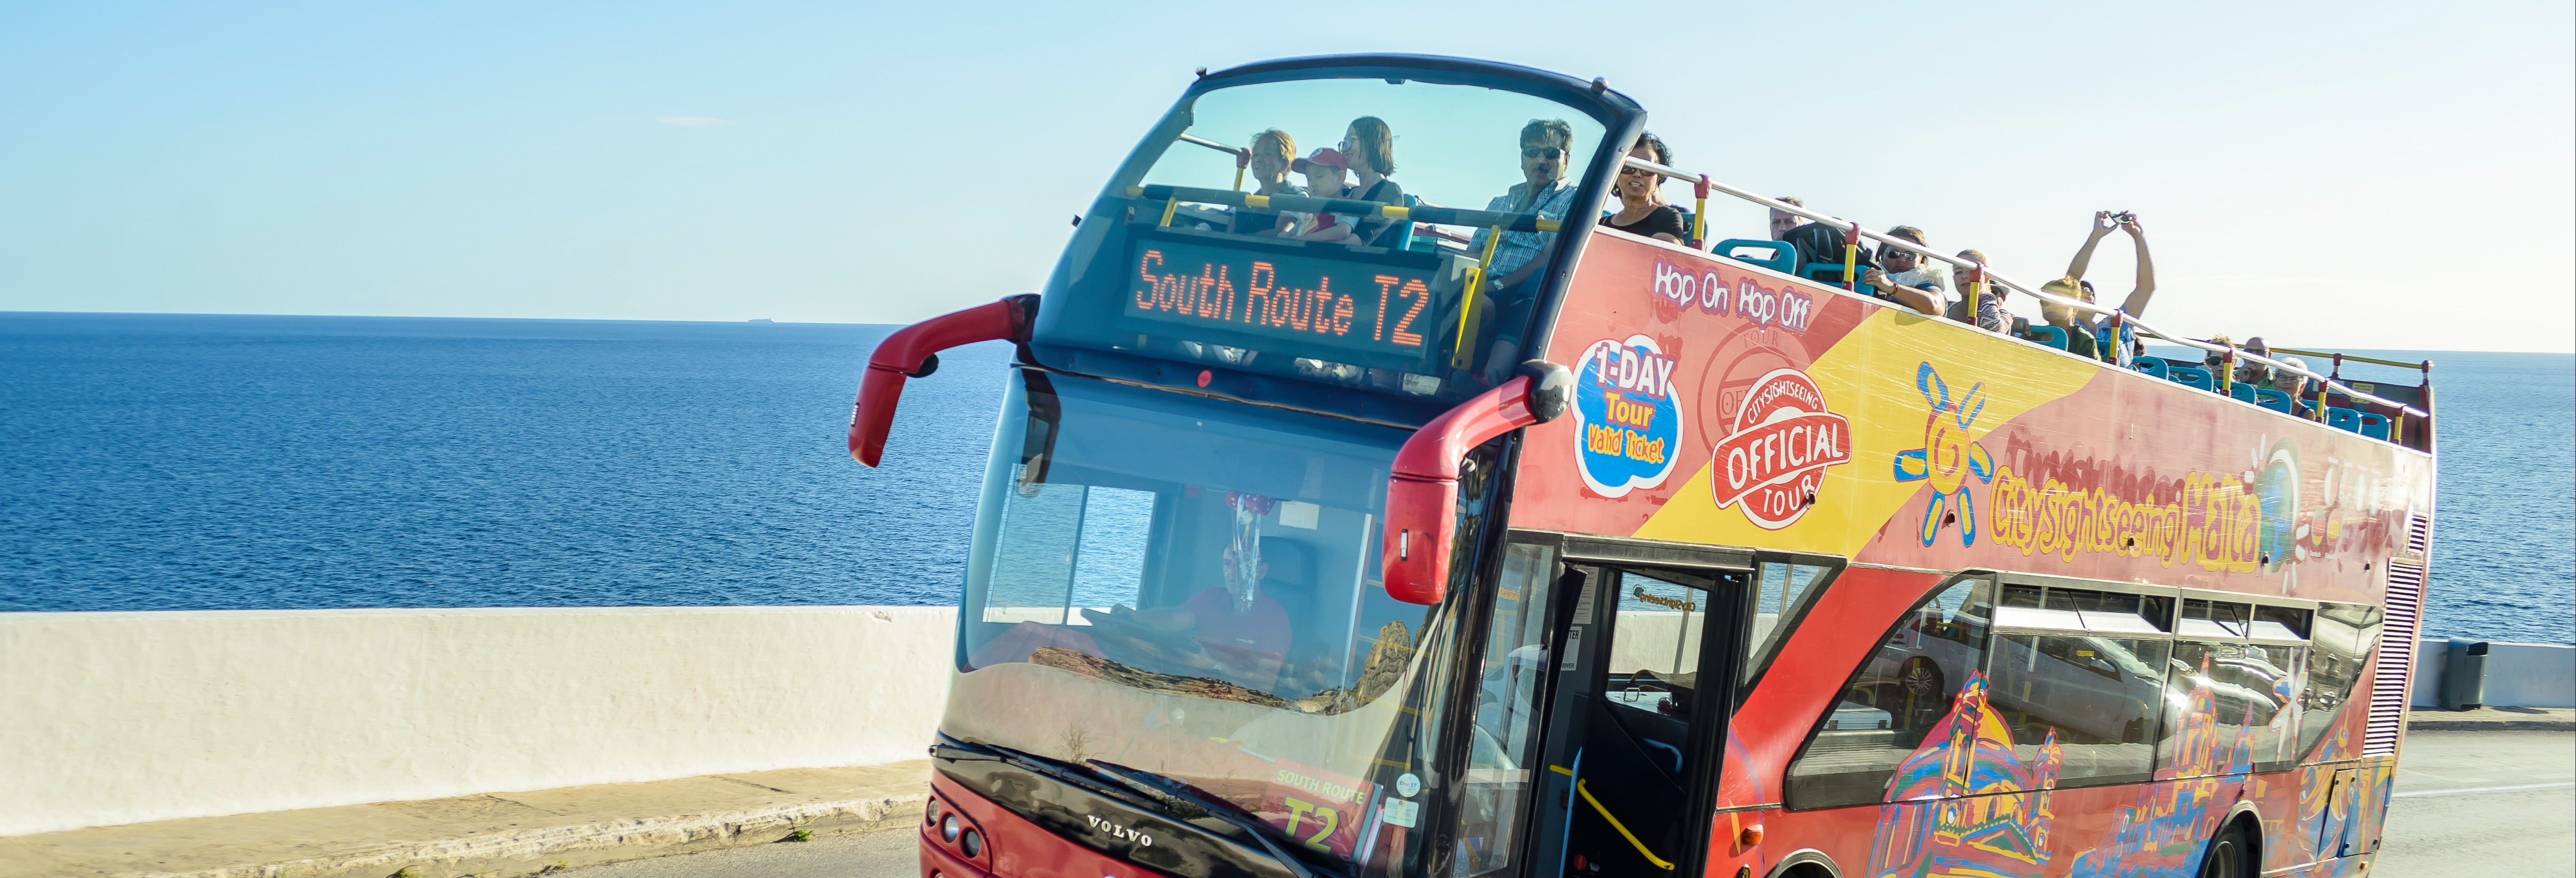 Bus touristique de Malte